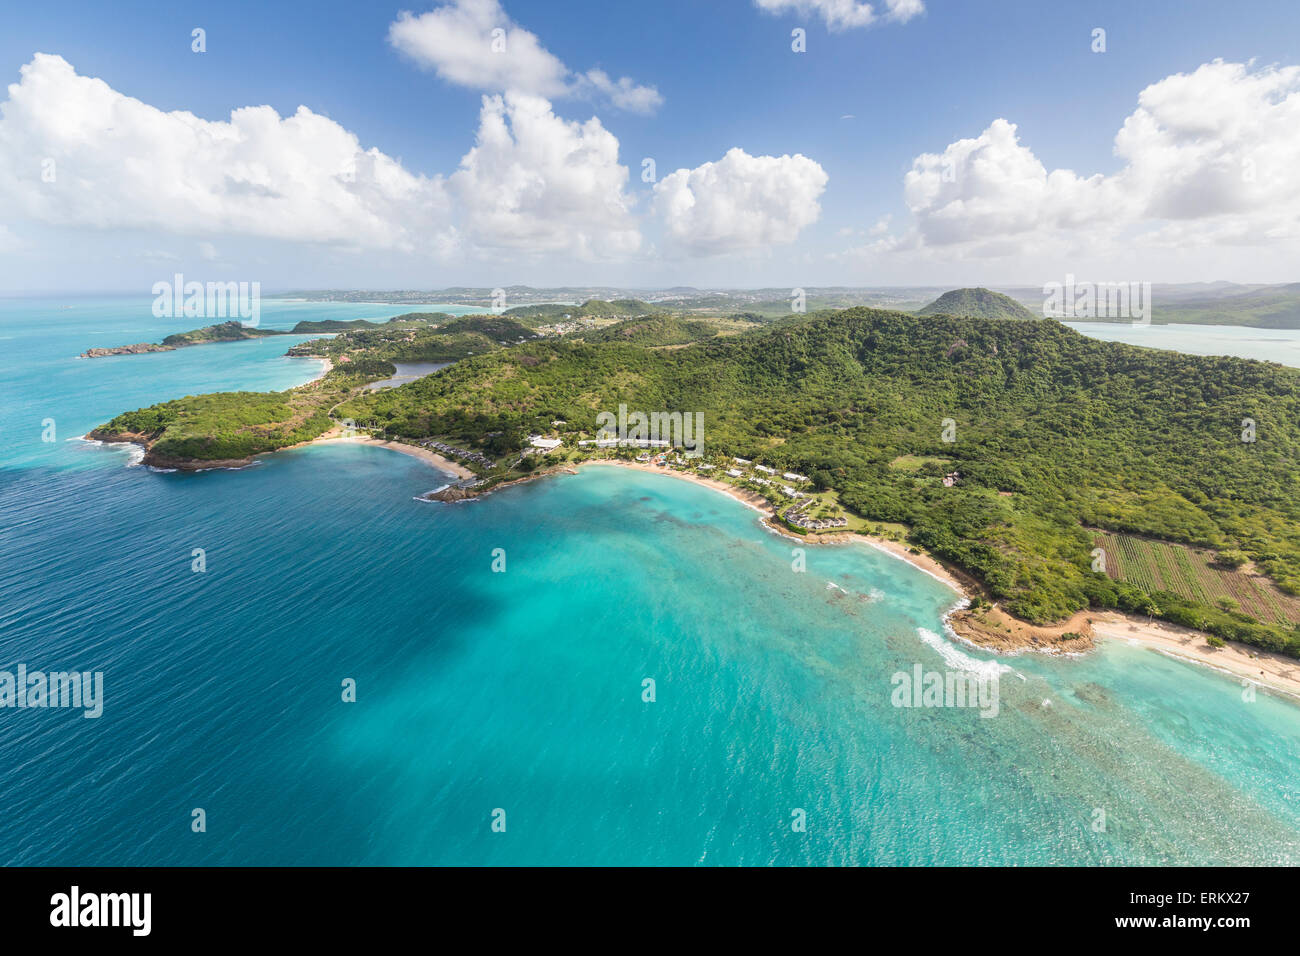 Vue aérienne de la côte accidentée de Antigua pleine de baies et plages bordées par une végétation tropicale dense, Antigua Banque D'Images